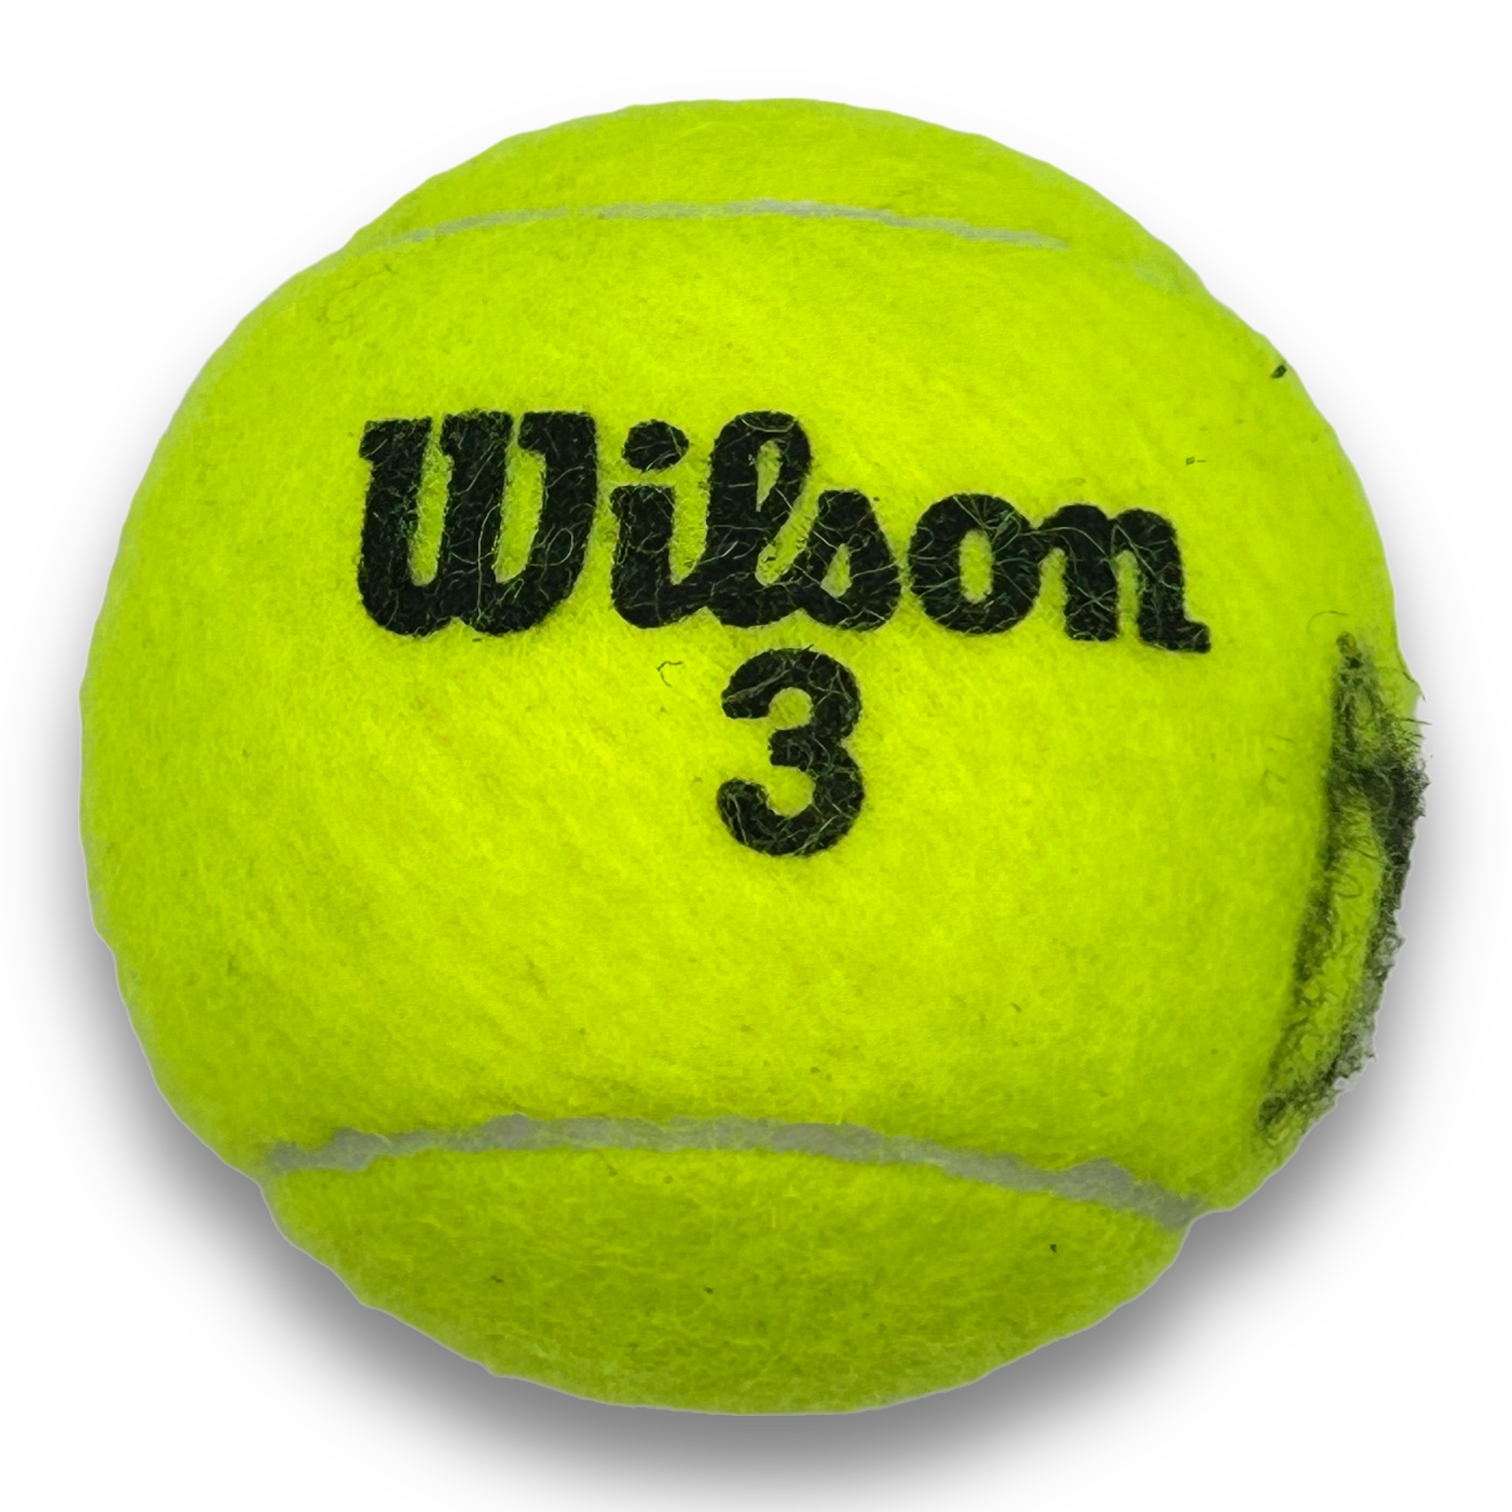 ARTHUR FILS SIGNED WILSON 3 ROLAND GARROS TENNIS BALL (AFTAL COA)